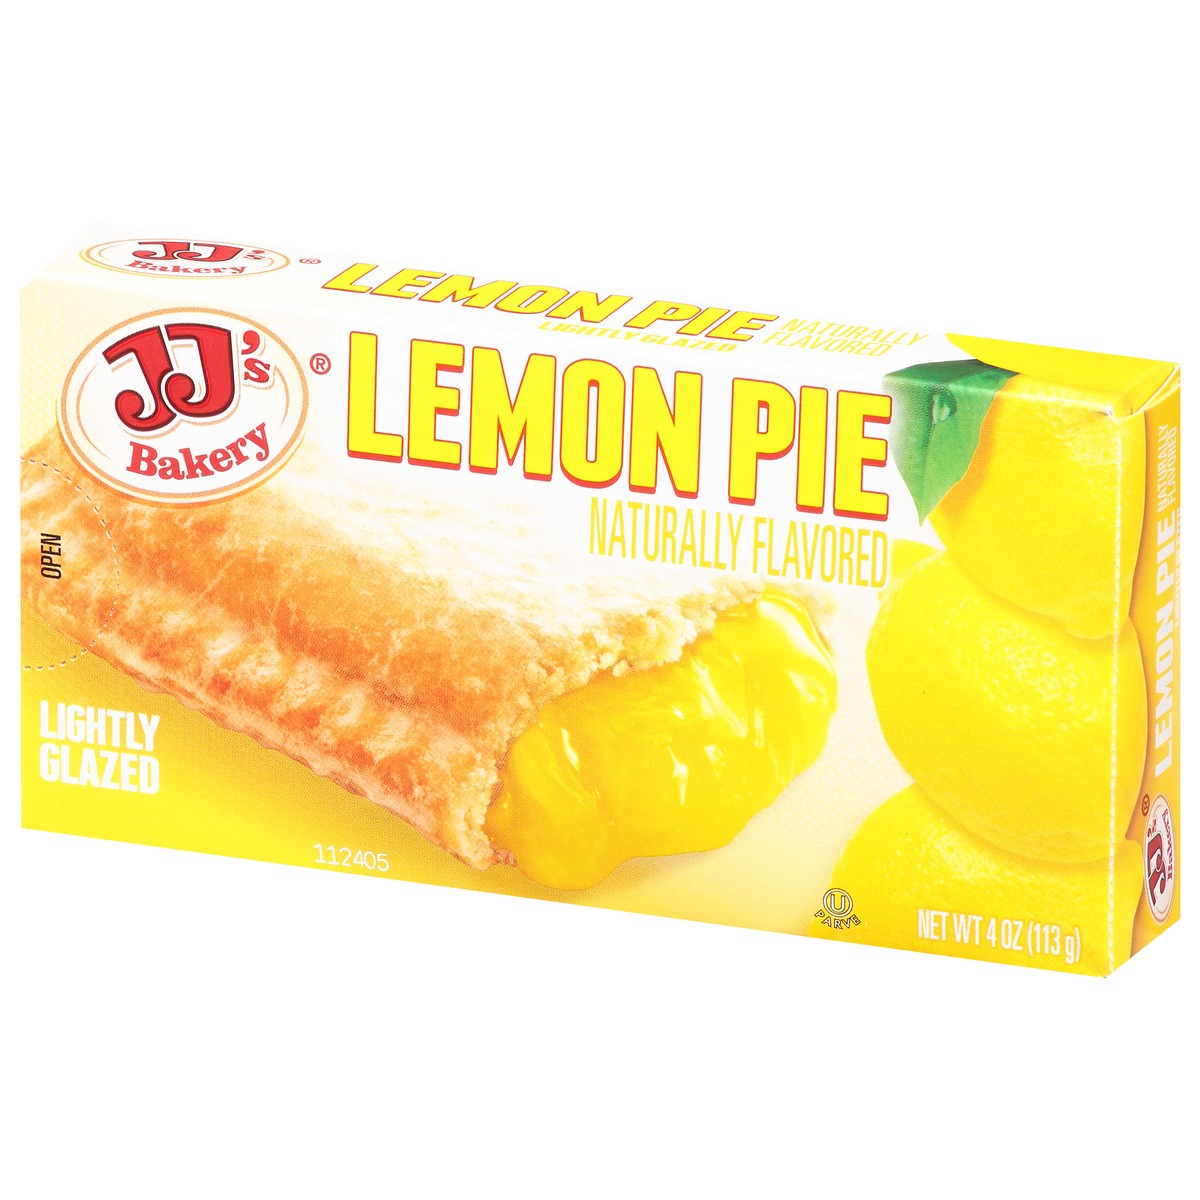 slide 3 of 13, JJ's Bakery Lightly Glazed Lemon Pie 4 oz, 4 oz